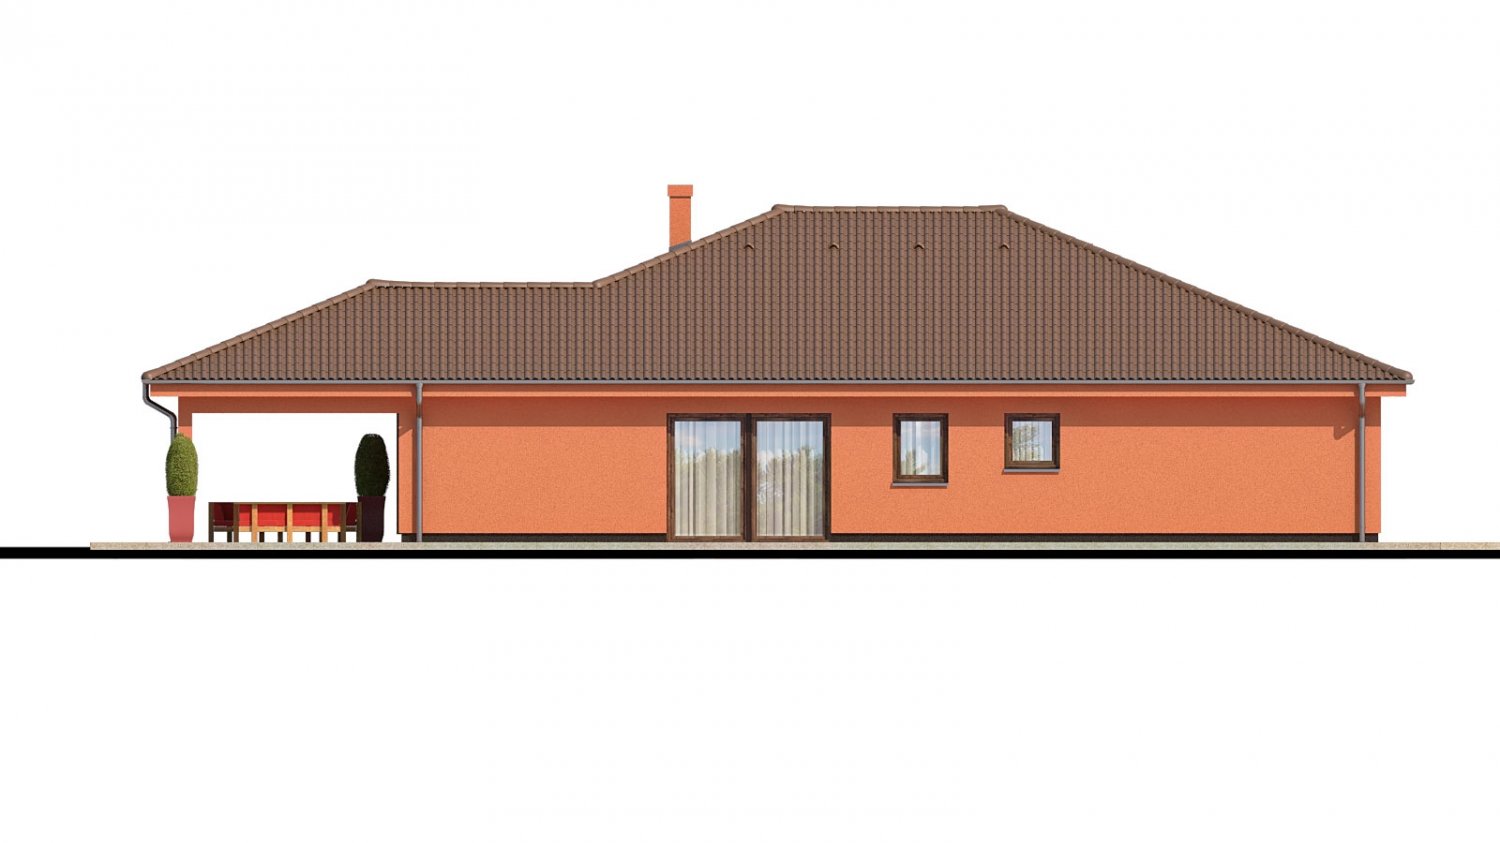 Pohľad 3. - Exkluzivní jednoduchý dům s dvojgaráží a krytou terasou.